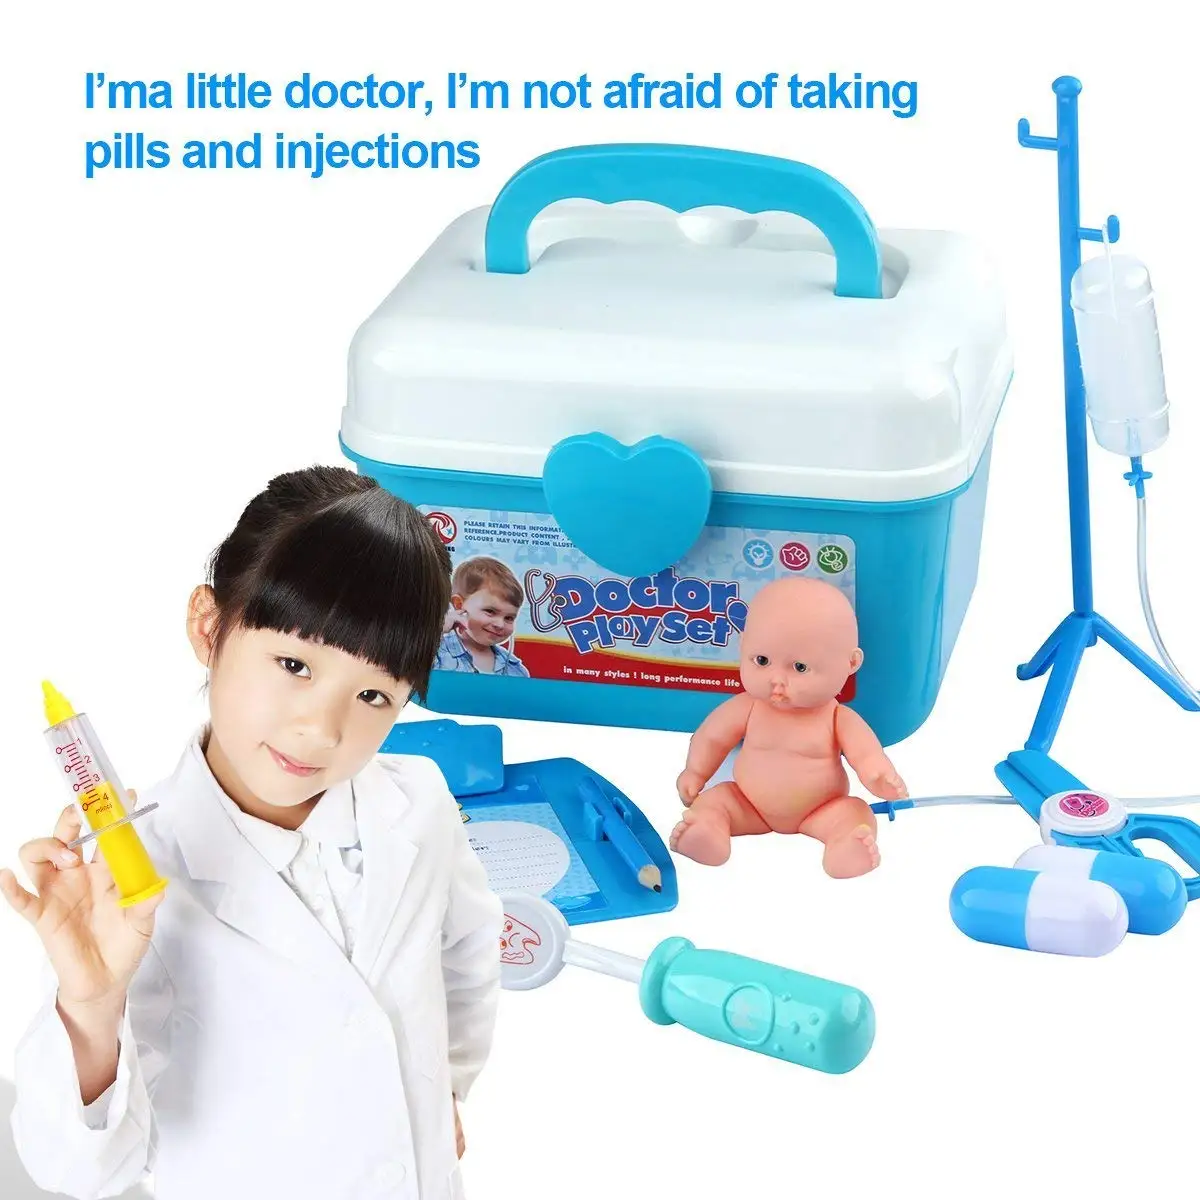 Наборы "Доктор" для детей со стетоскопом и пальто медицинский комплект для толдлеров, вид доктора Playset 33 упаковка для детей базовые навыки